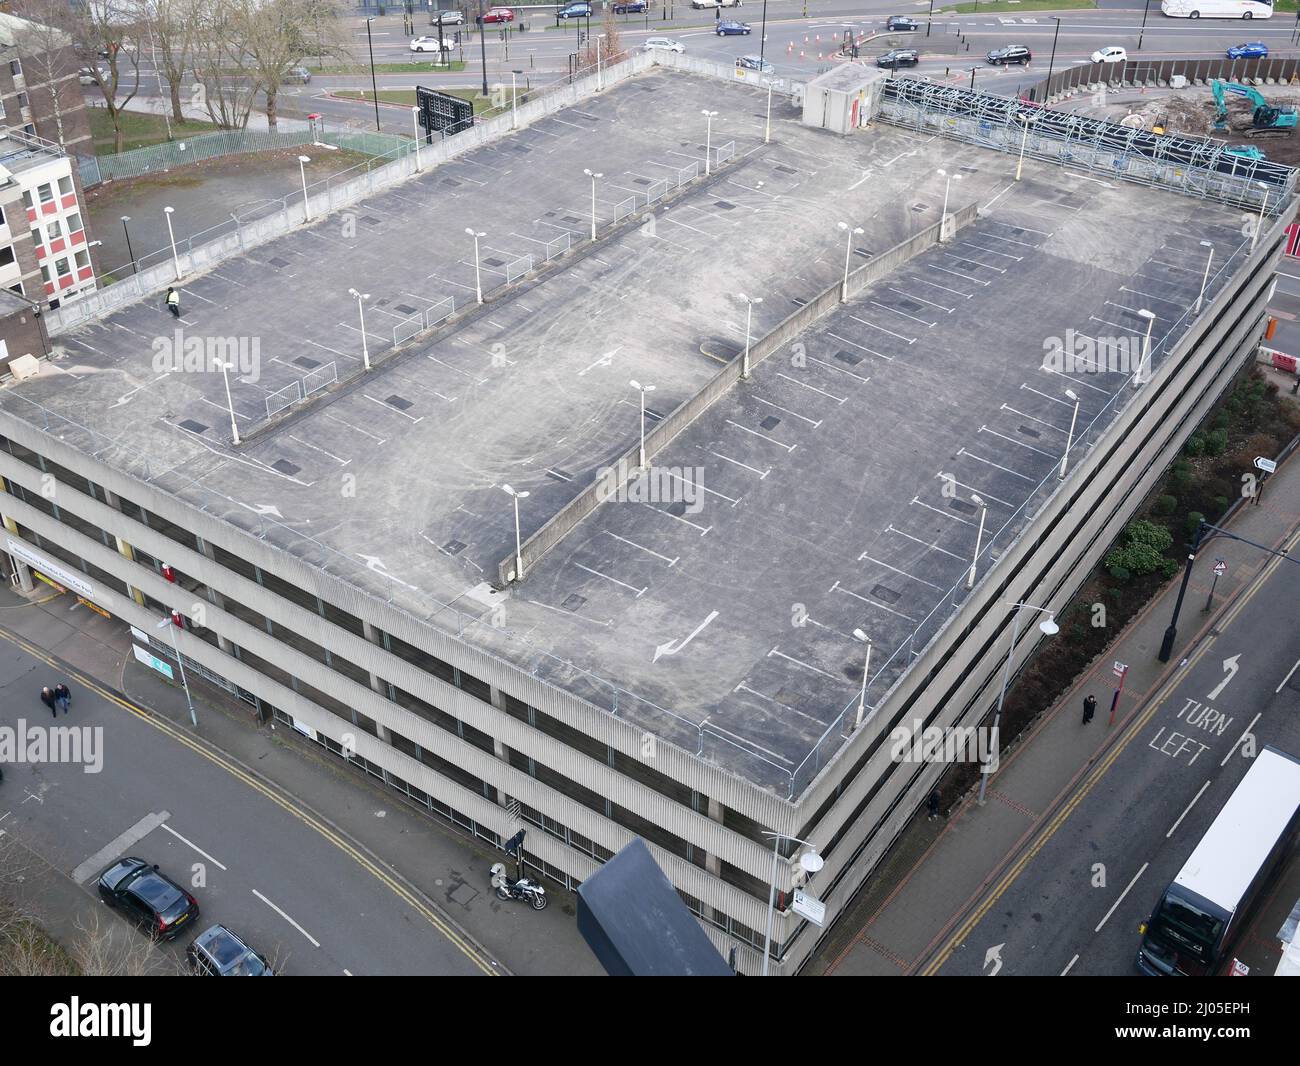 Vista aérea del aparcamiento de varios pisos de la azotea en el centro de Birmingham, Reino Unido Foto de stock